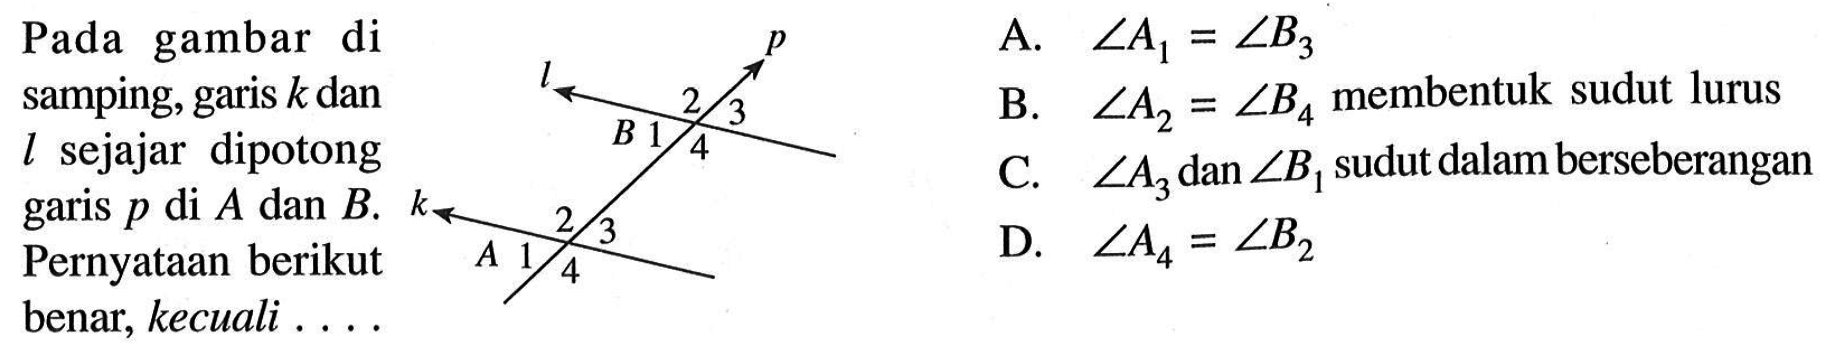 Pada gambar di samping, garis k dan l sejajar dipotong garis p di A dan B. Pernyataan berikut benar, kecuali  .... p l 2 3 B 1 4 k A 1 2 3 4  A.  sudut A1=sudut B3 B. sudut A2=sudut B4  membentuk sudut lurus C.  sudut A3  dan  sudut B1 sudut dalam berseberangan D.  sudut A4=sudut B2 